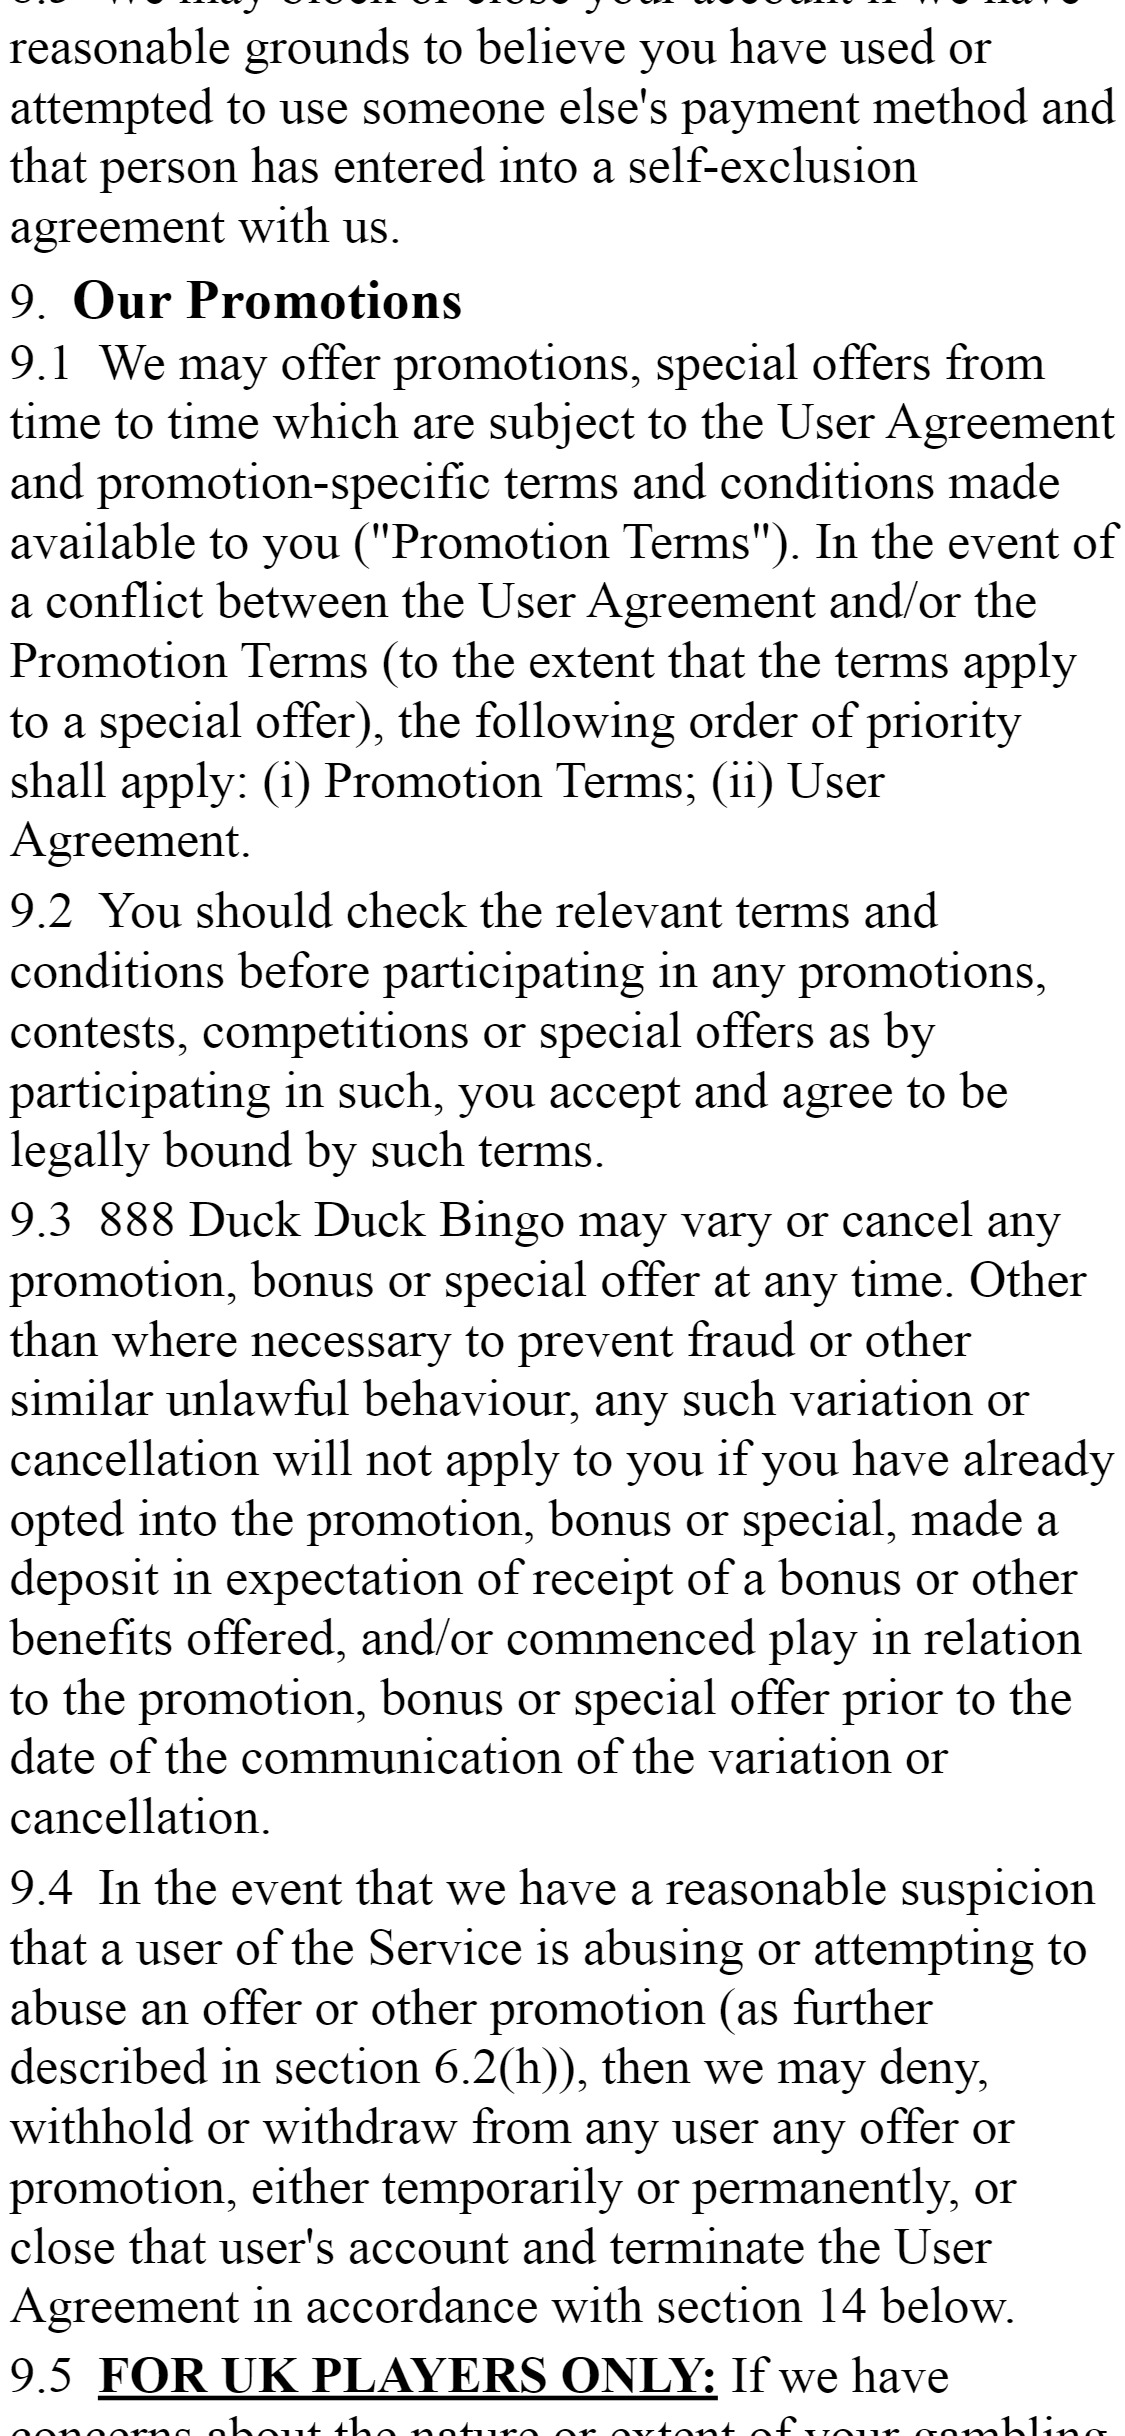 Duck Duck Bingo Casino Mobile No Deposit Bonus Review